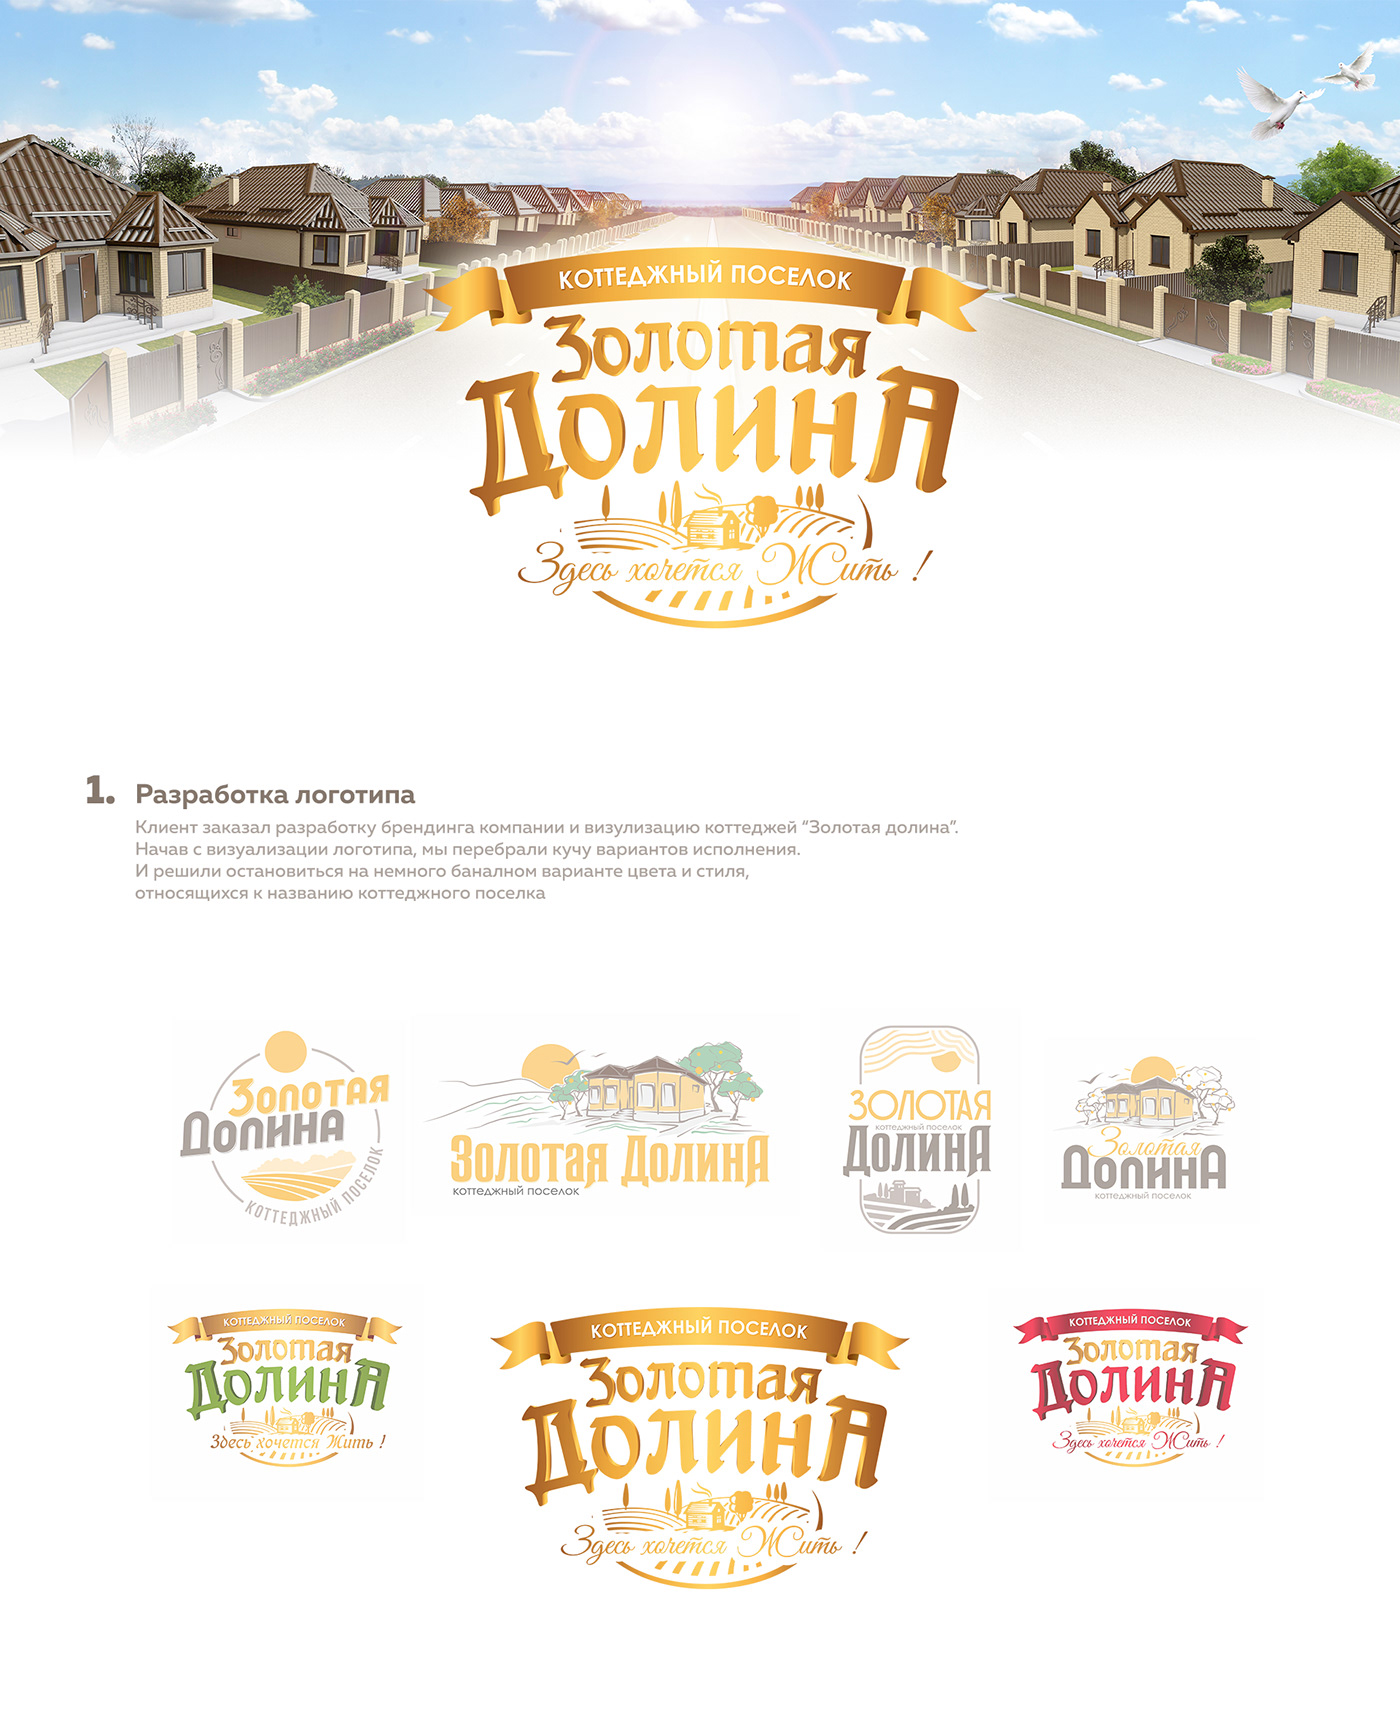 3D brand house Logotype визуализация Коттеджный поселок логотип реклама фирменный стиль